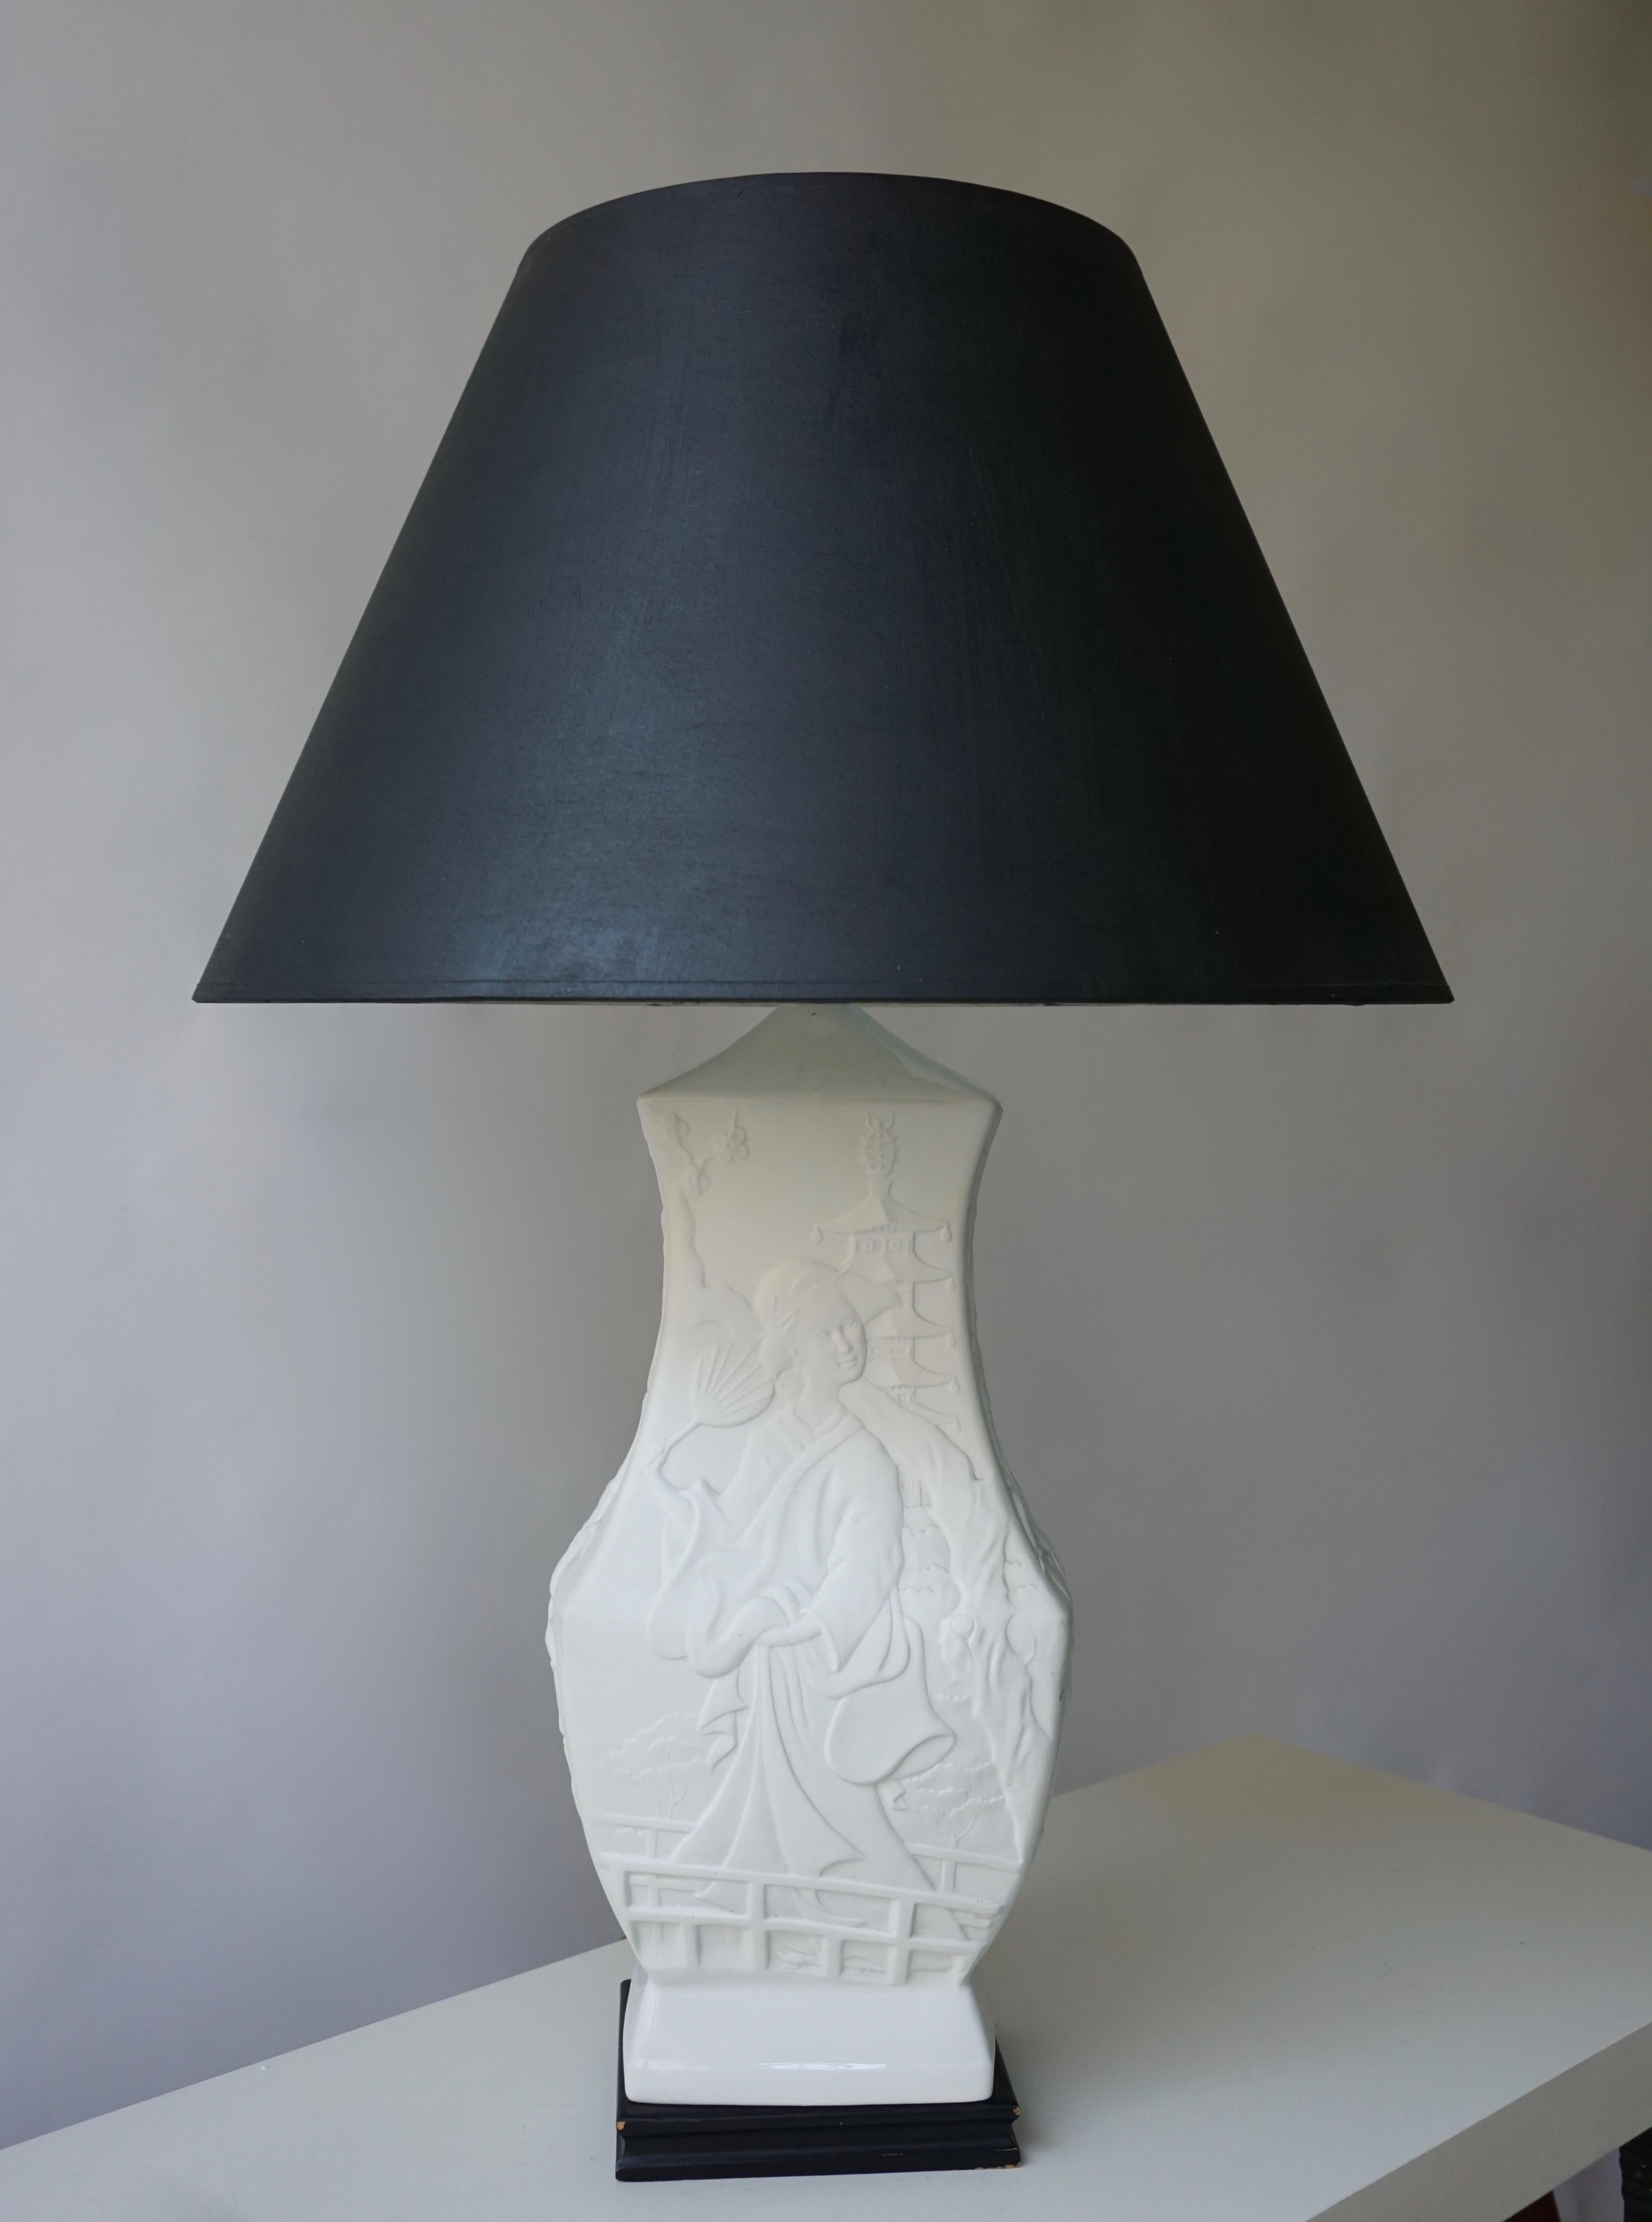 Lampe de table en porcelaine sur une base en bois.
Mesures : Hauteur base 52 cm.
Largeur de la base 22 cm.
Base de profondeur 17 cm.
L'abat-jour n'est pas à vendre et n'est pas inclus dans le prix.